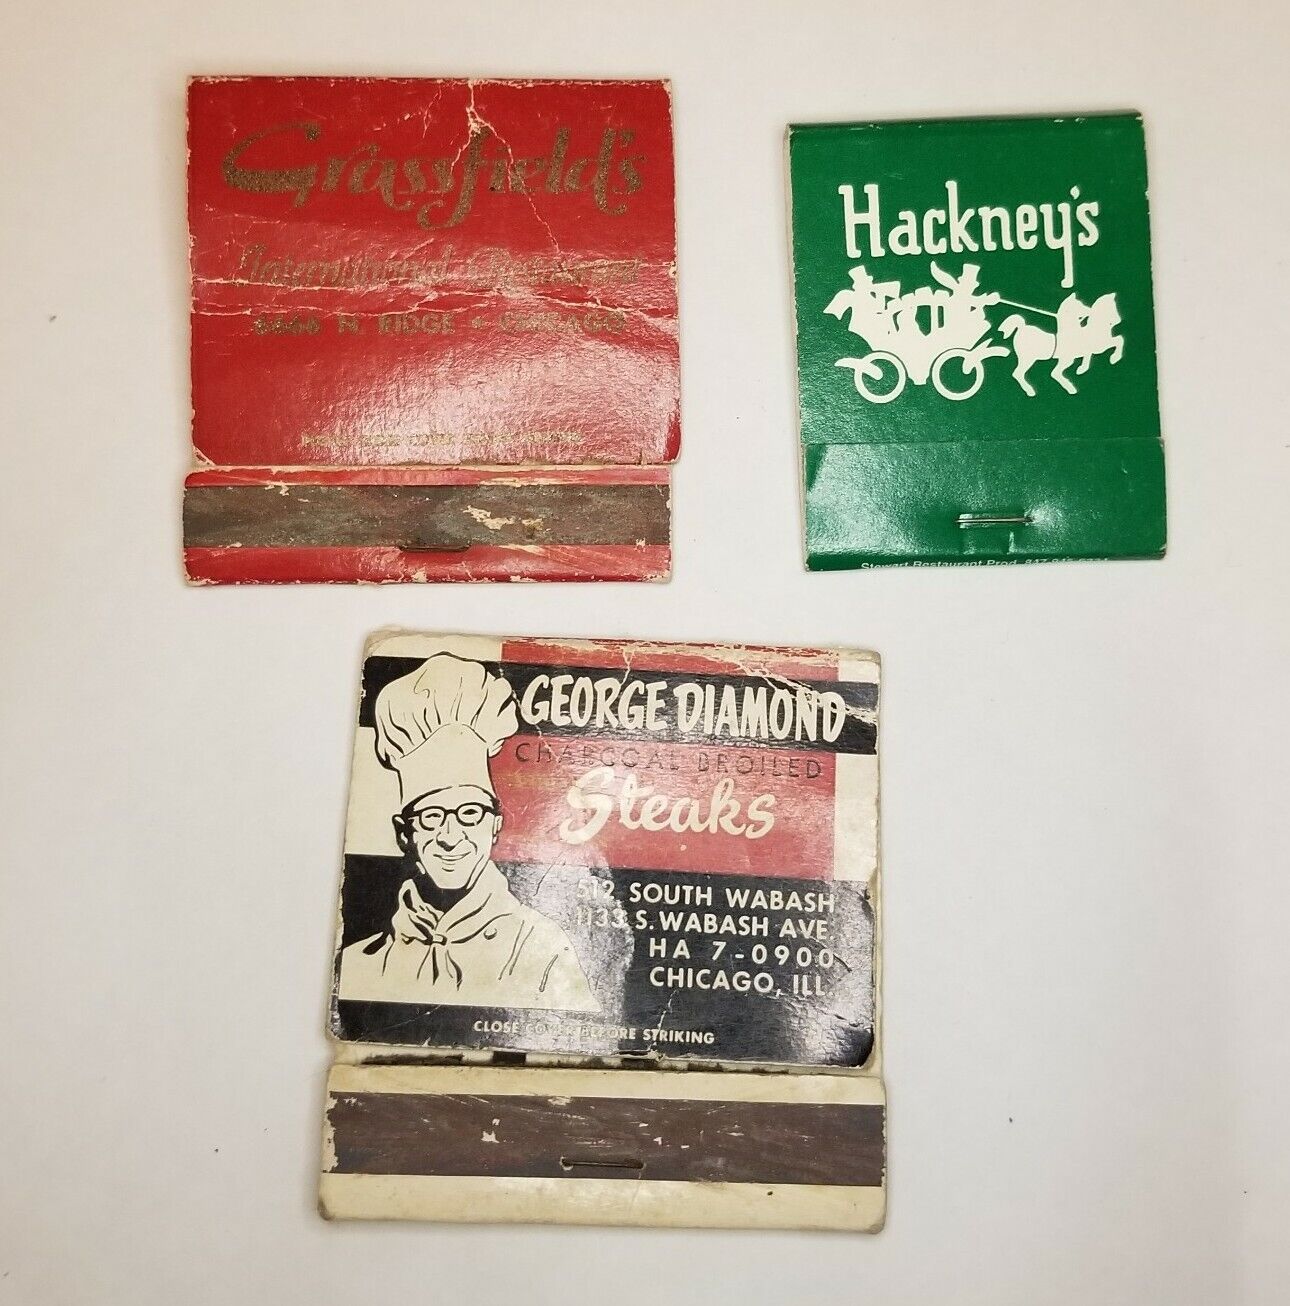 Vtg Chicago Restaurant George Diamond Grassfield's Hackney's Lot of 3 Matchbooks